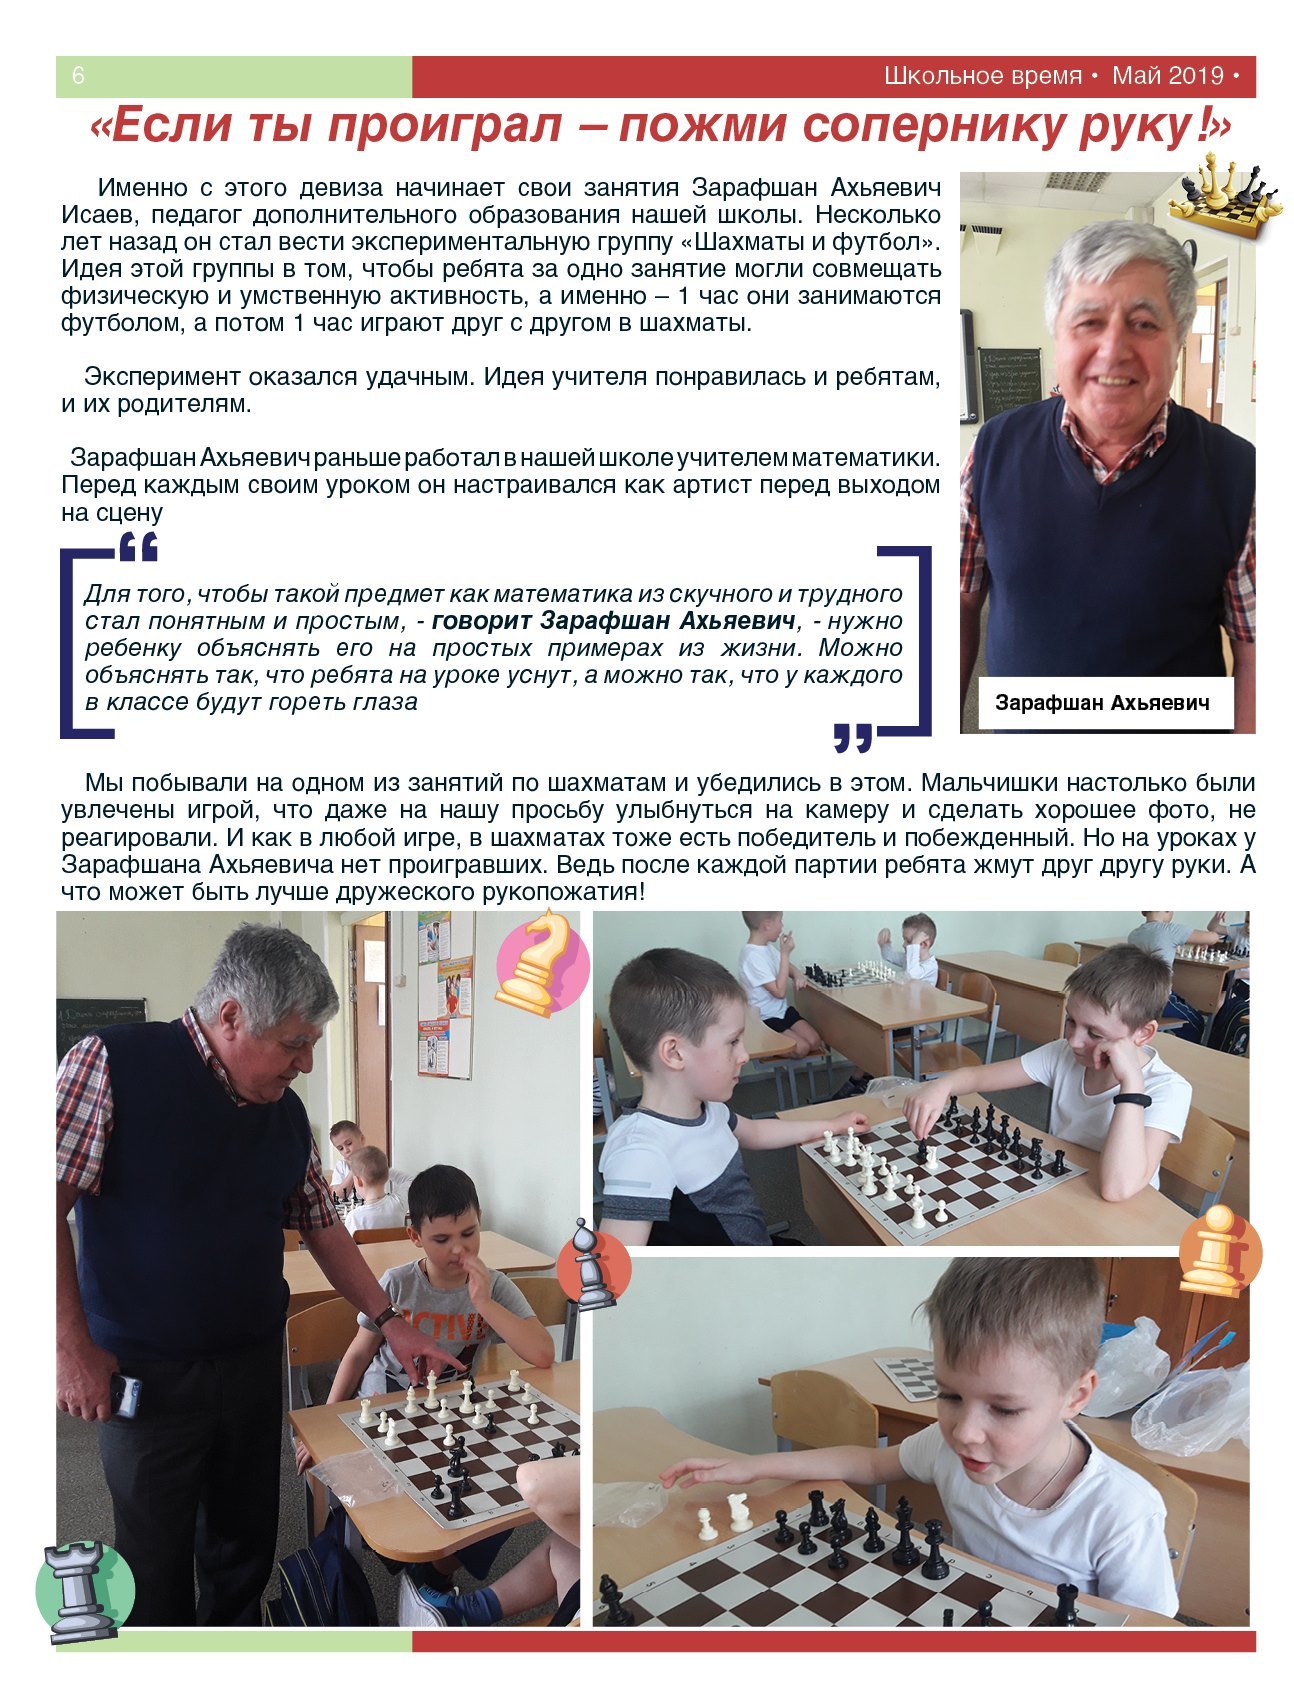 Федерация шашек Кировской области